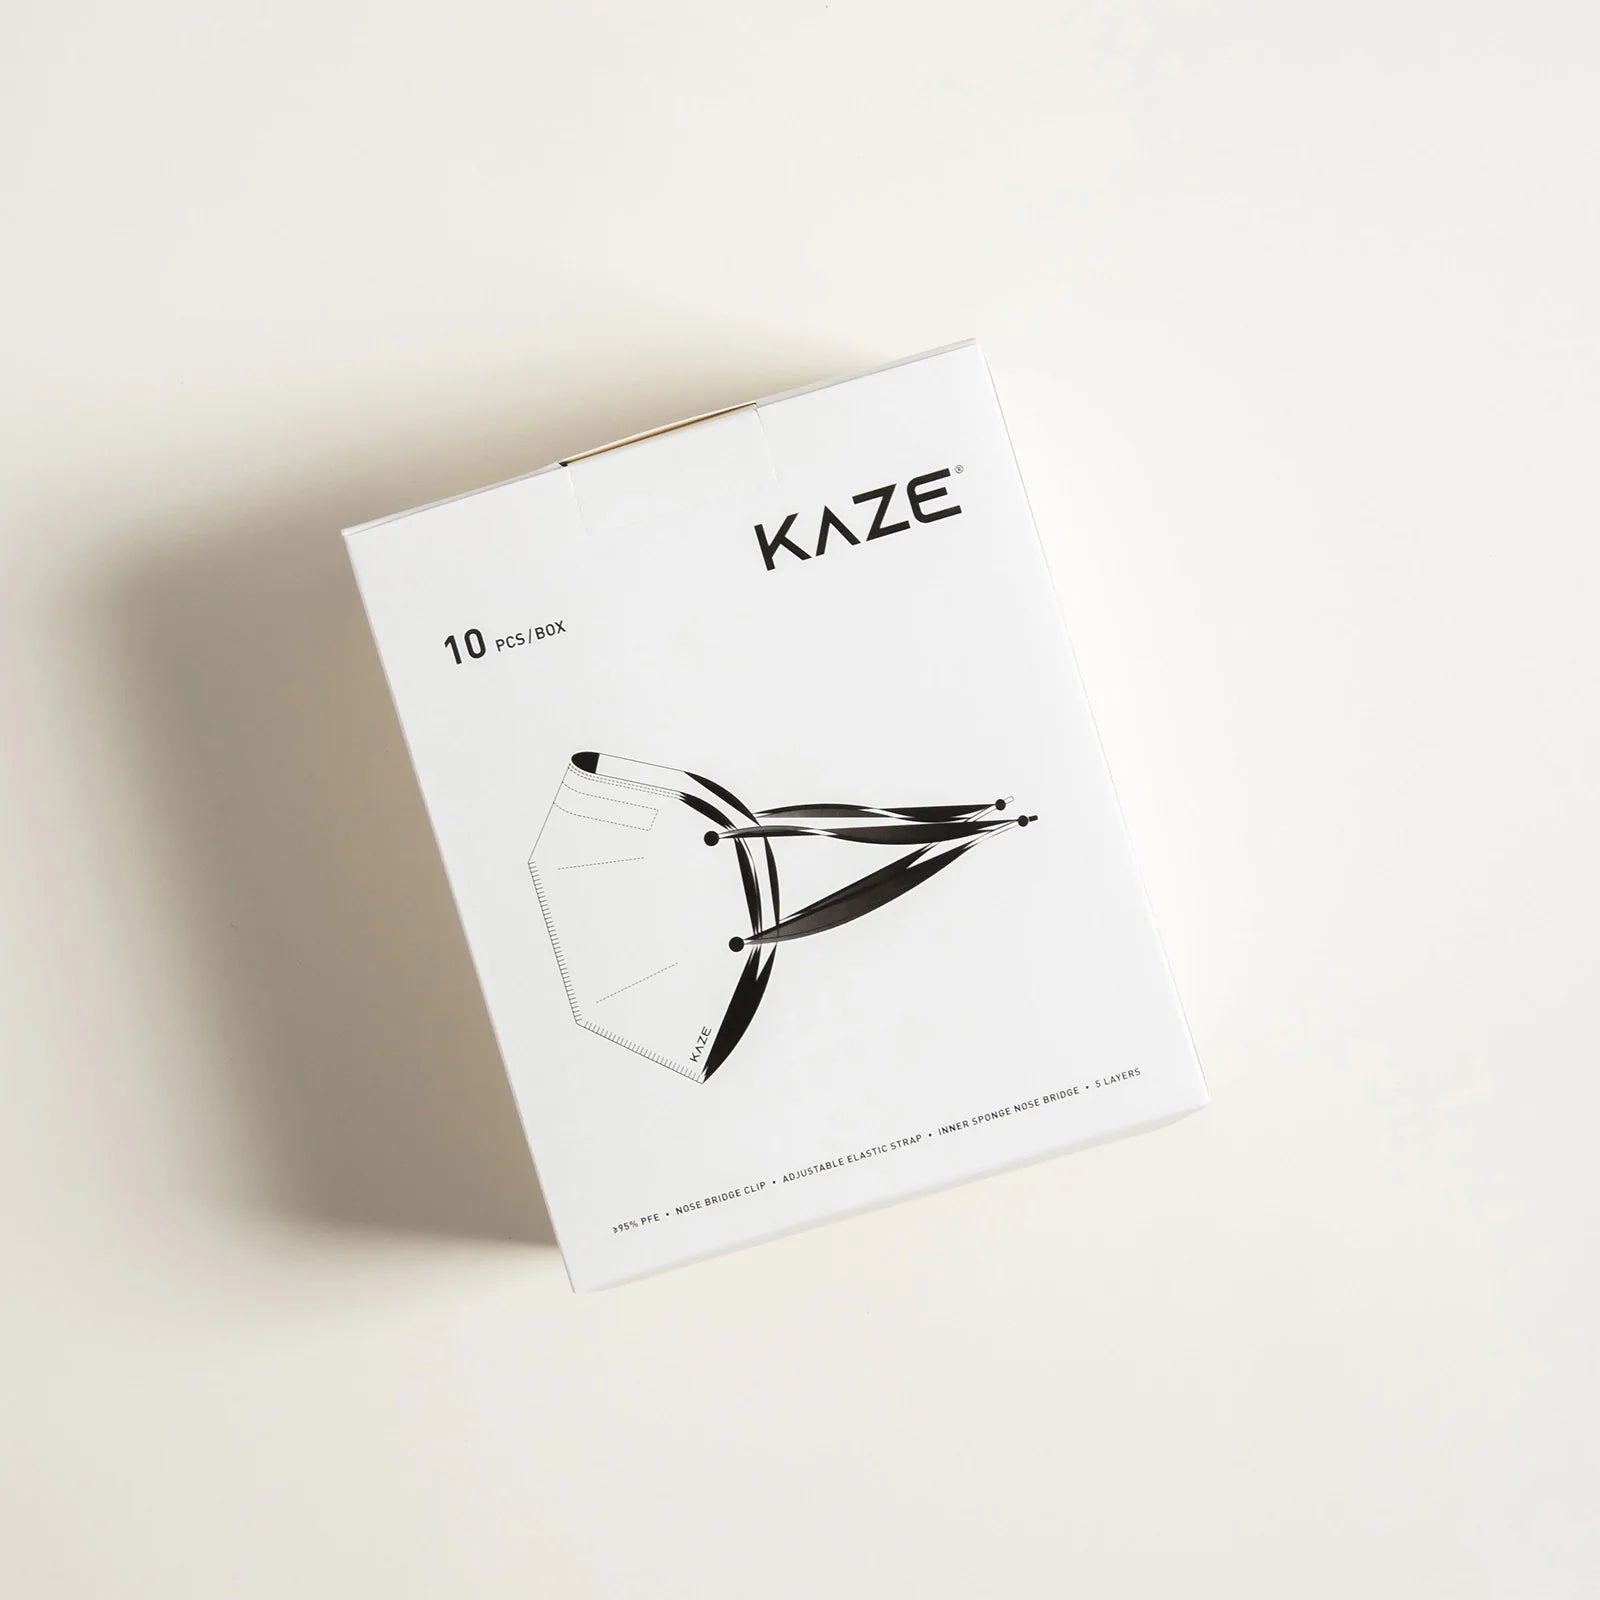 KAZE Masks - Aesthetic Series